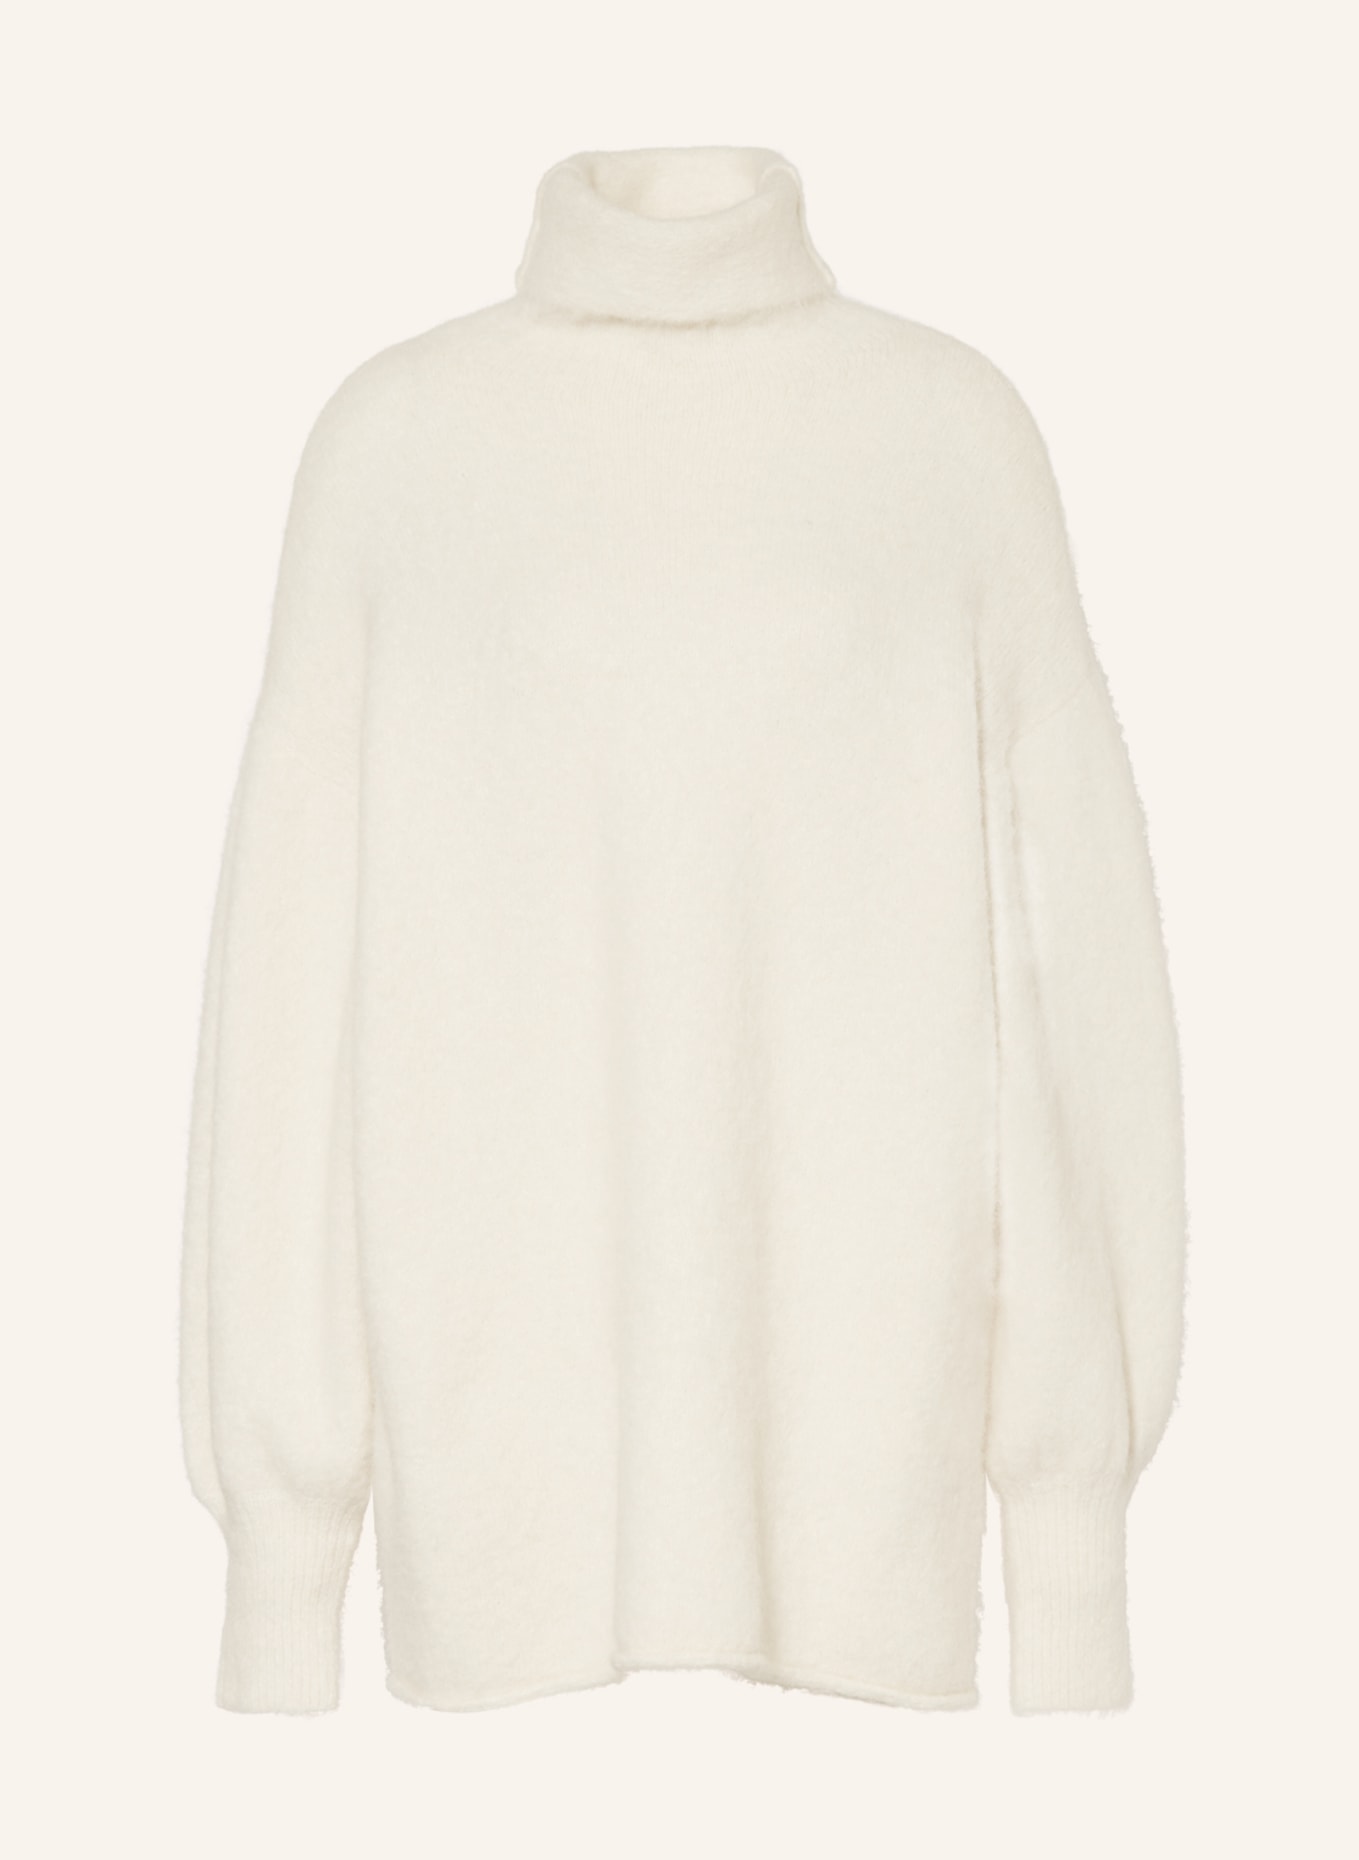 GESTUZ Sweater POSIAGZ with alpaca, Color: ECRU (Image 1)